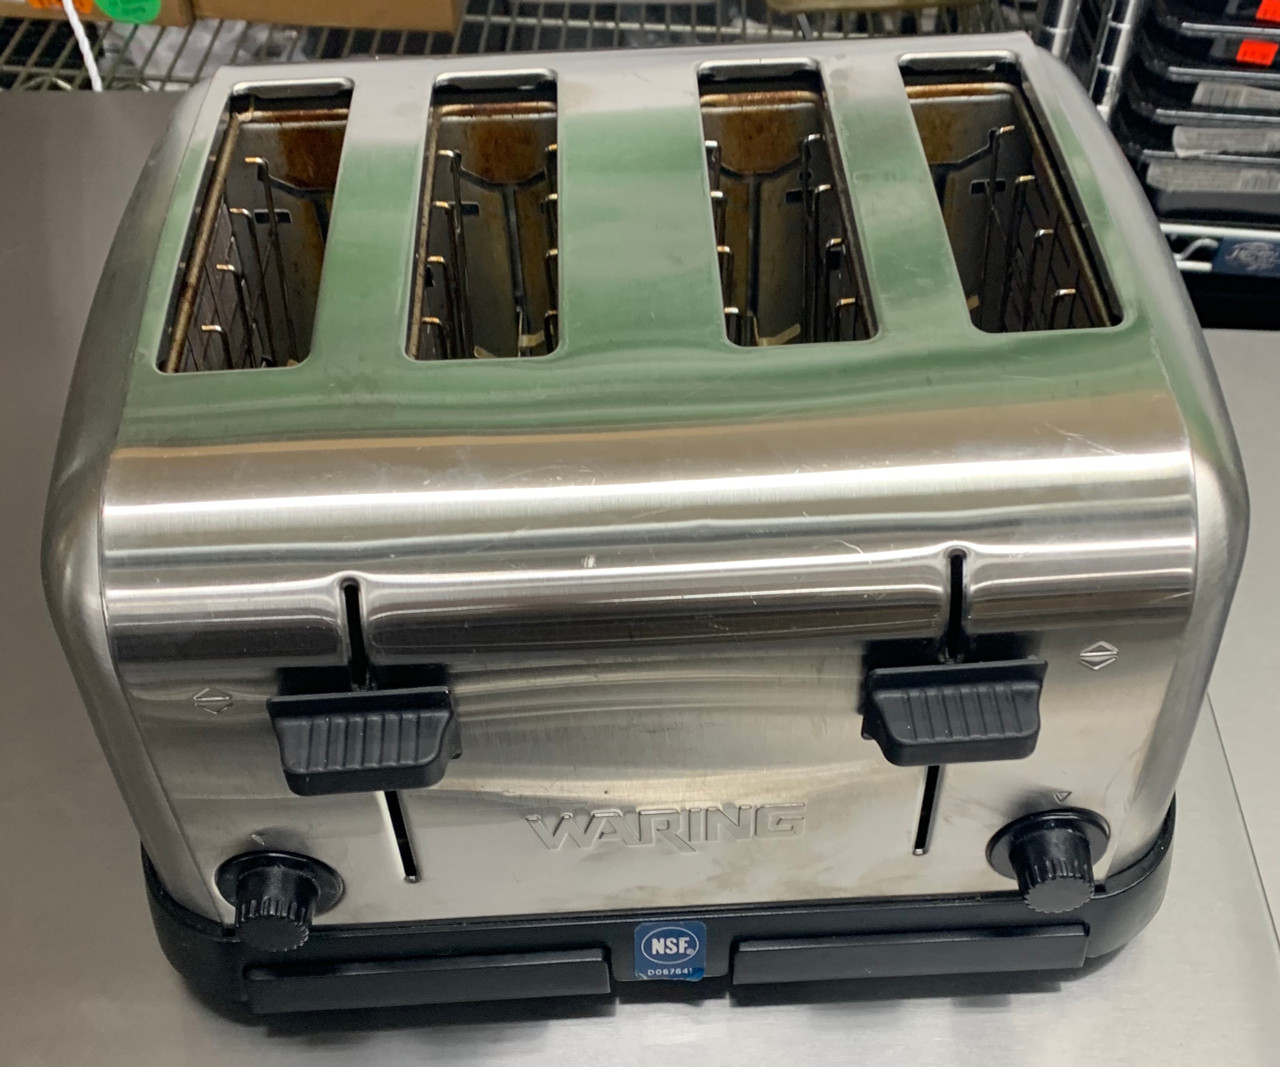 Waring WCT708 Commercial Toaster, (4) 1-3/8 Slot, 120V